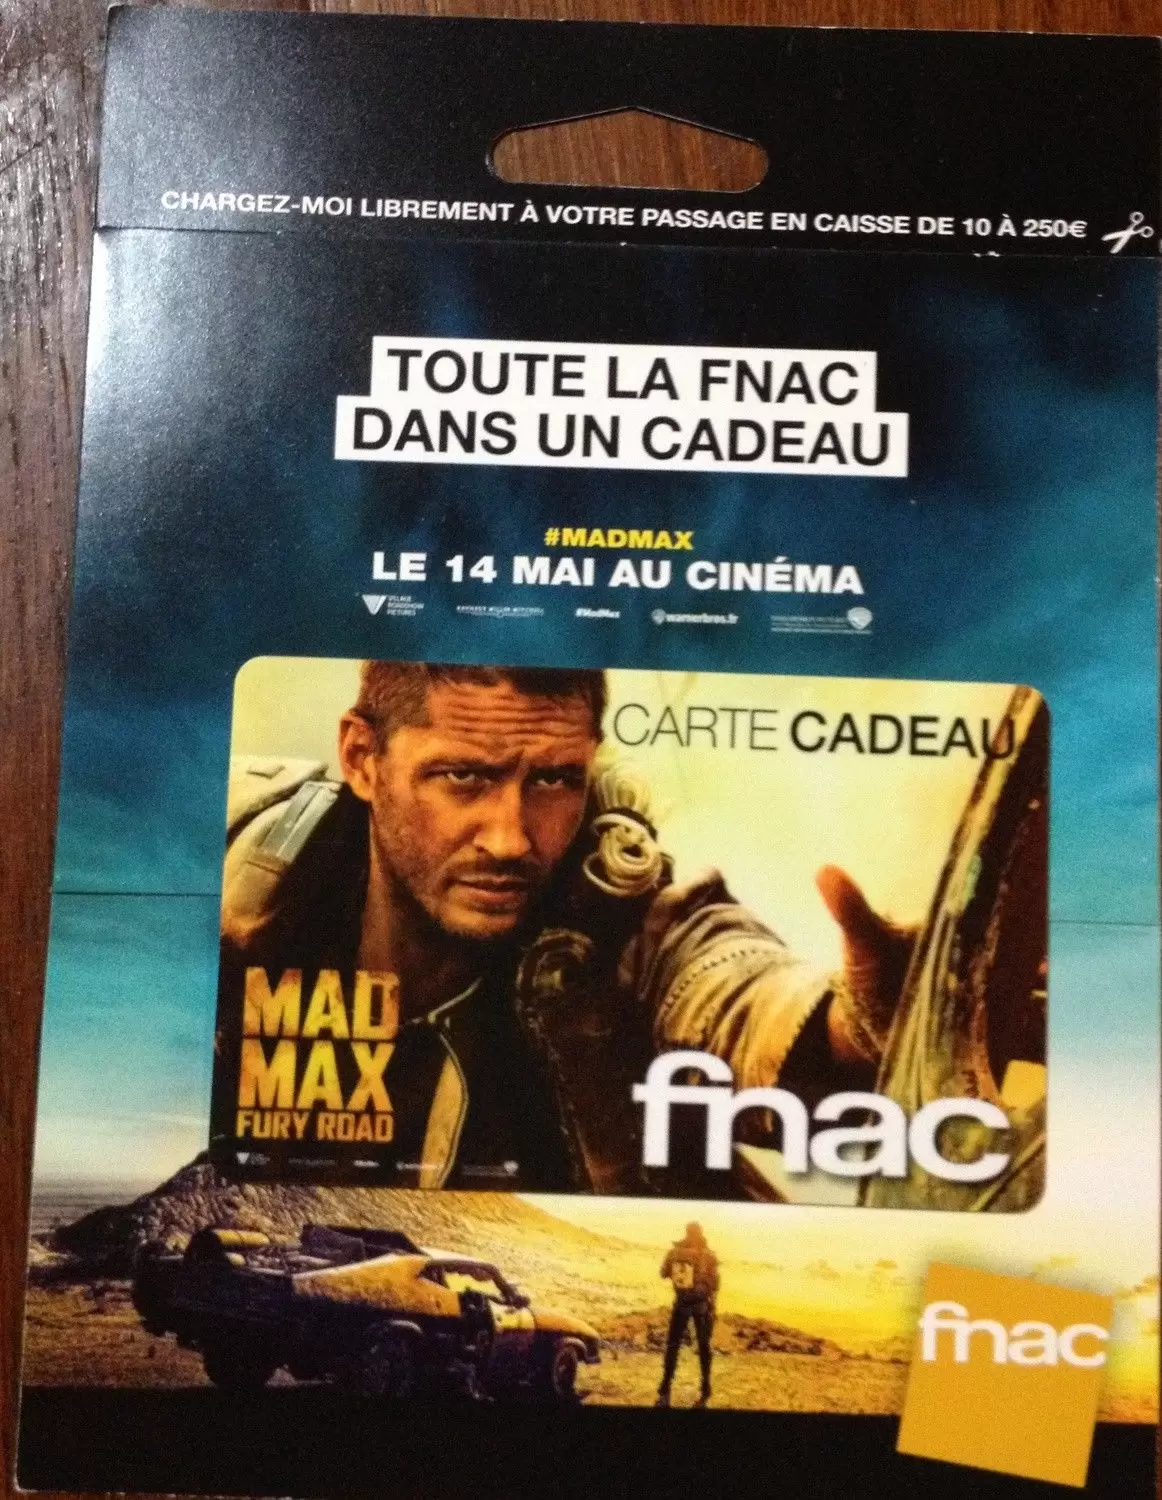 Cartes cadeau Fnac - Carte cadeau Fnac Mad Max Fury Road avec encart